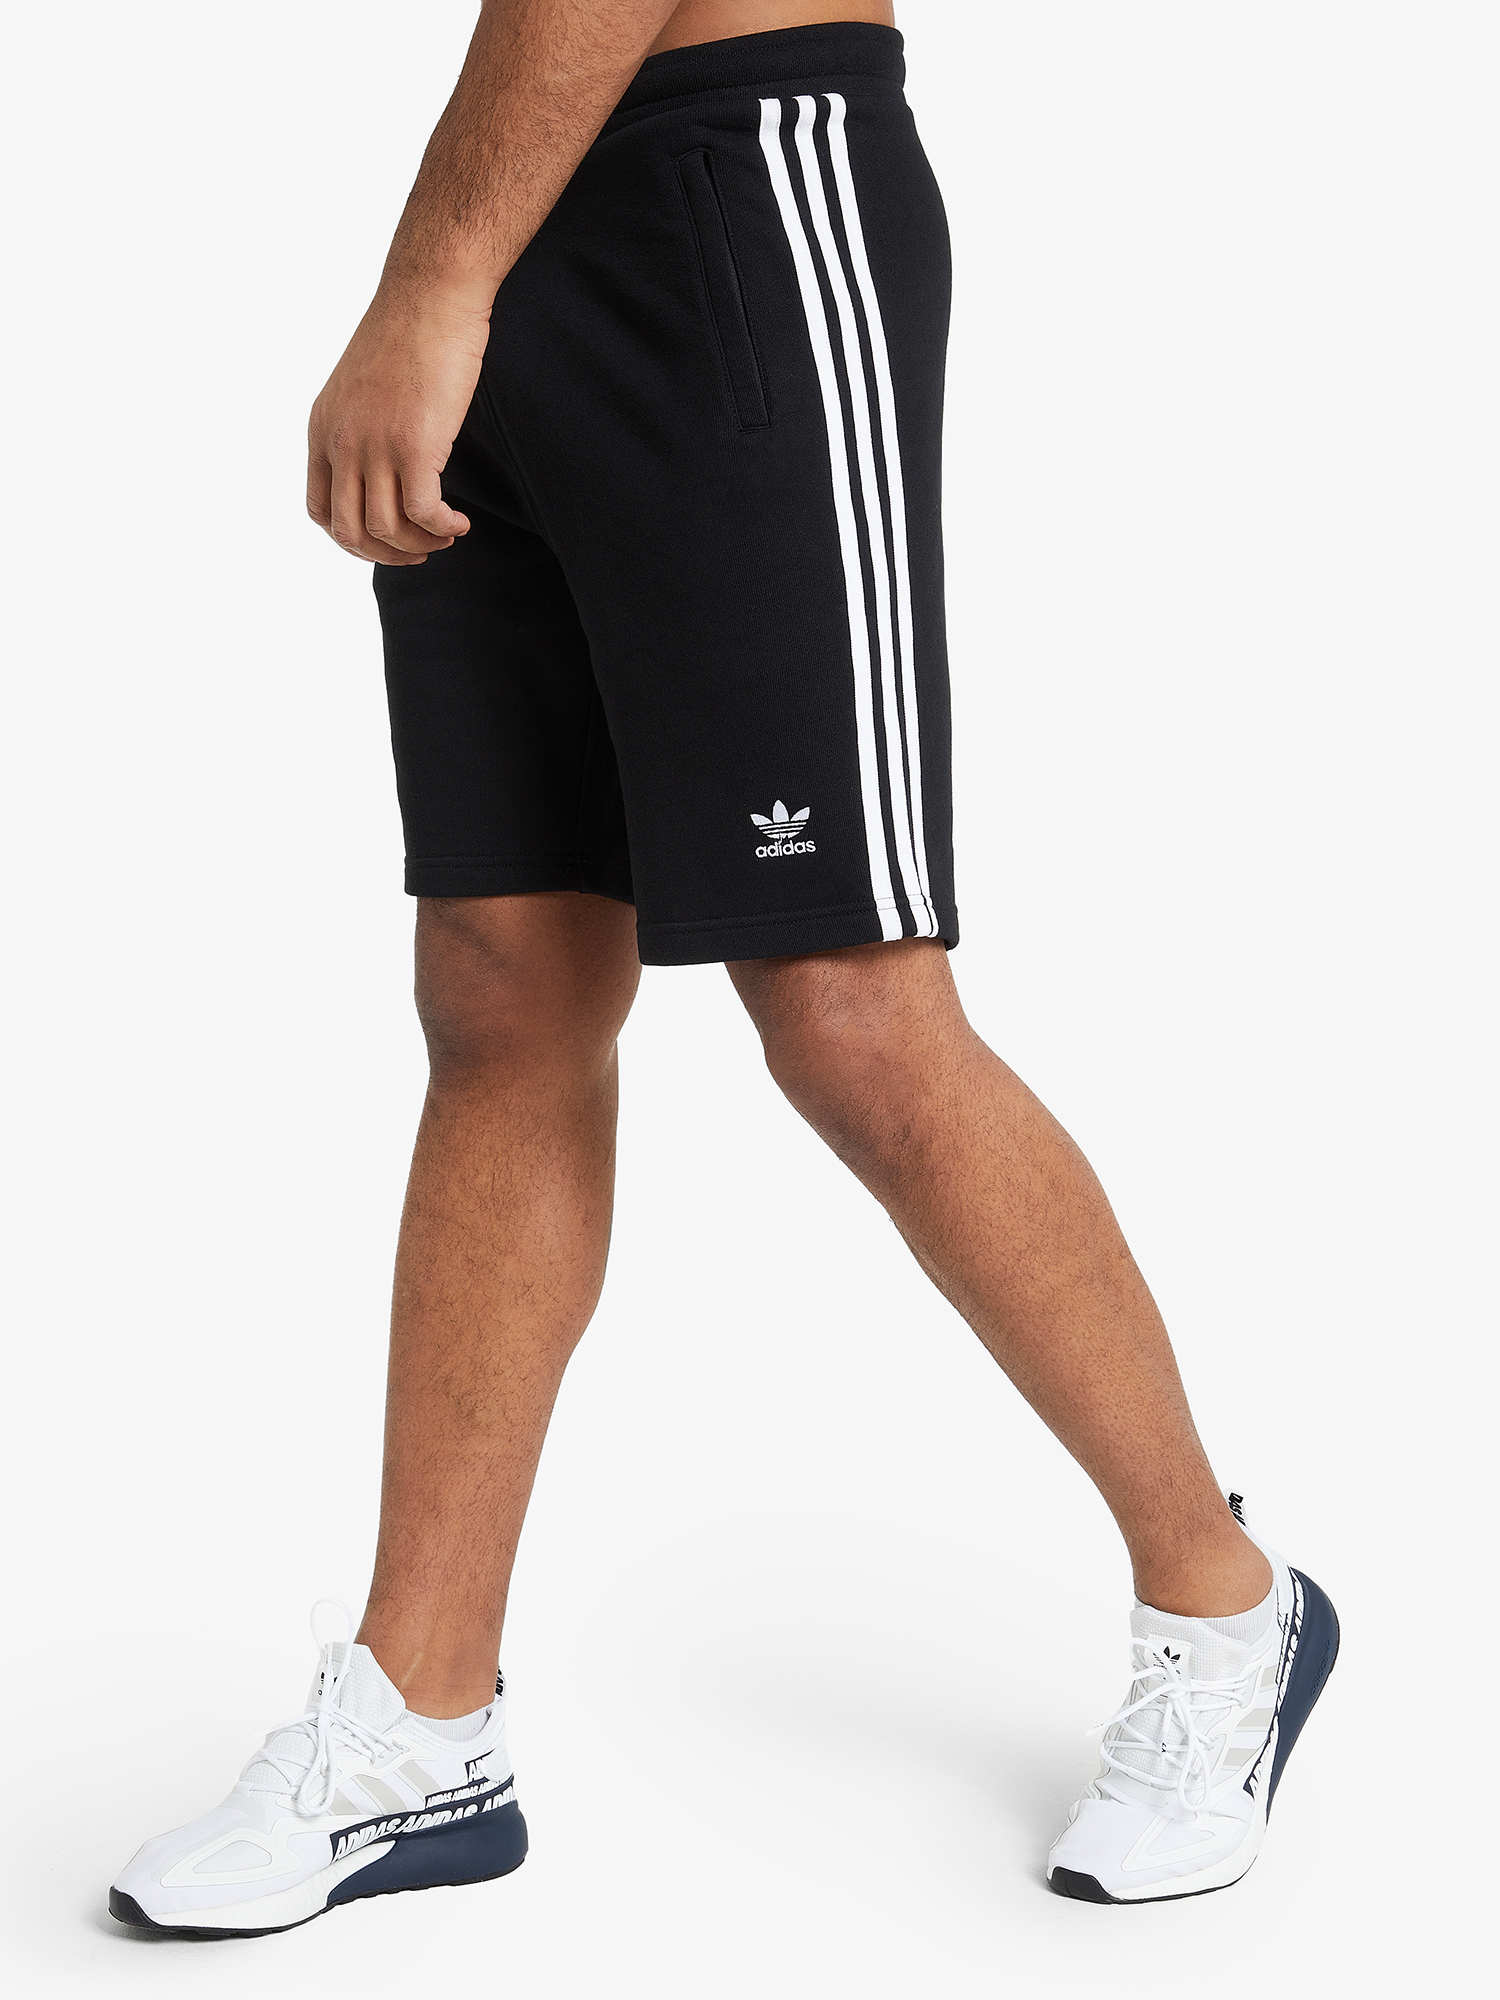 Шорты мужские adidas 3-Stripes, Черный